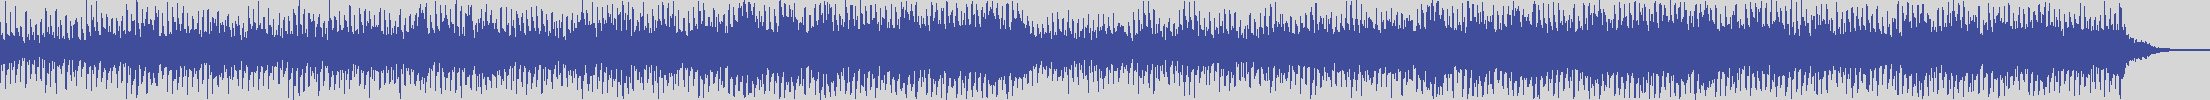 upr [UPR091] Wendy Bevan - Falling [Original Mix] audio wave form